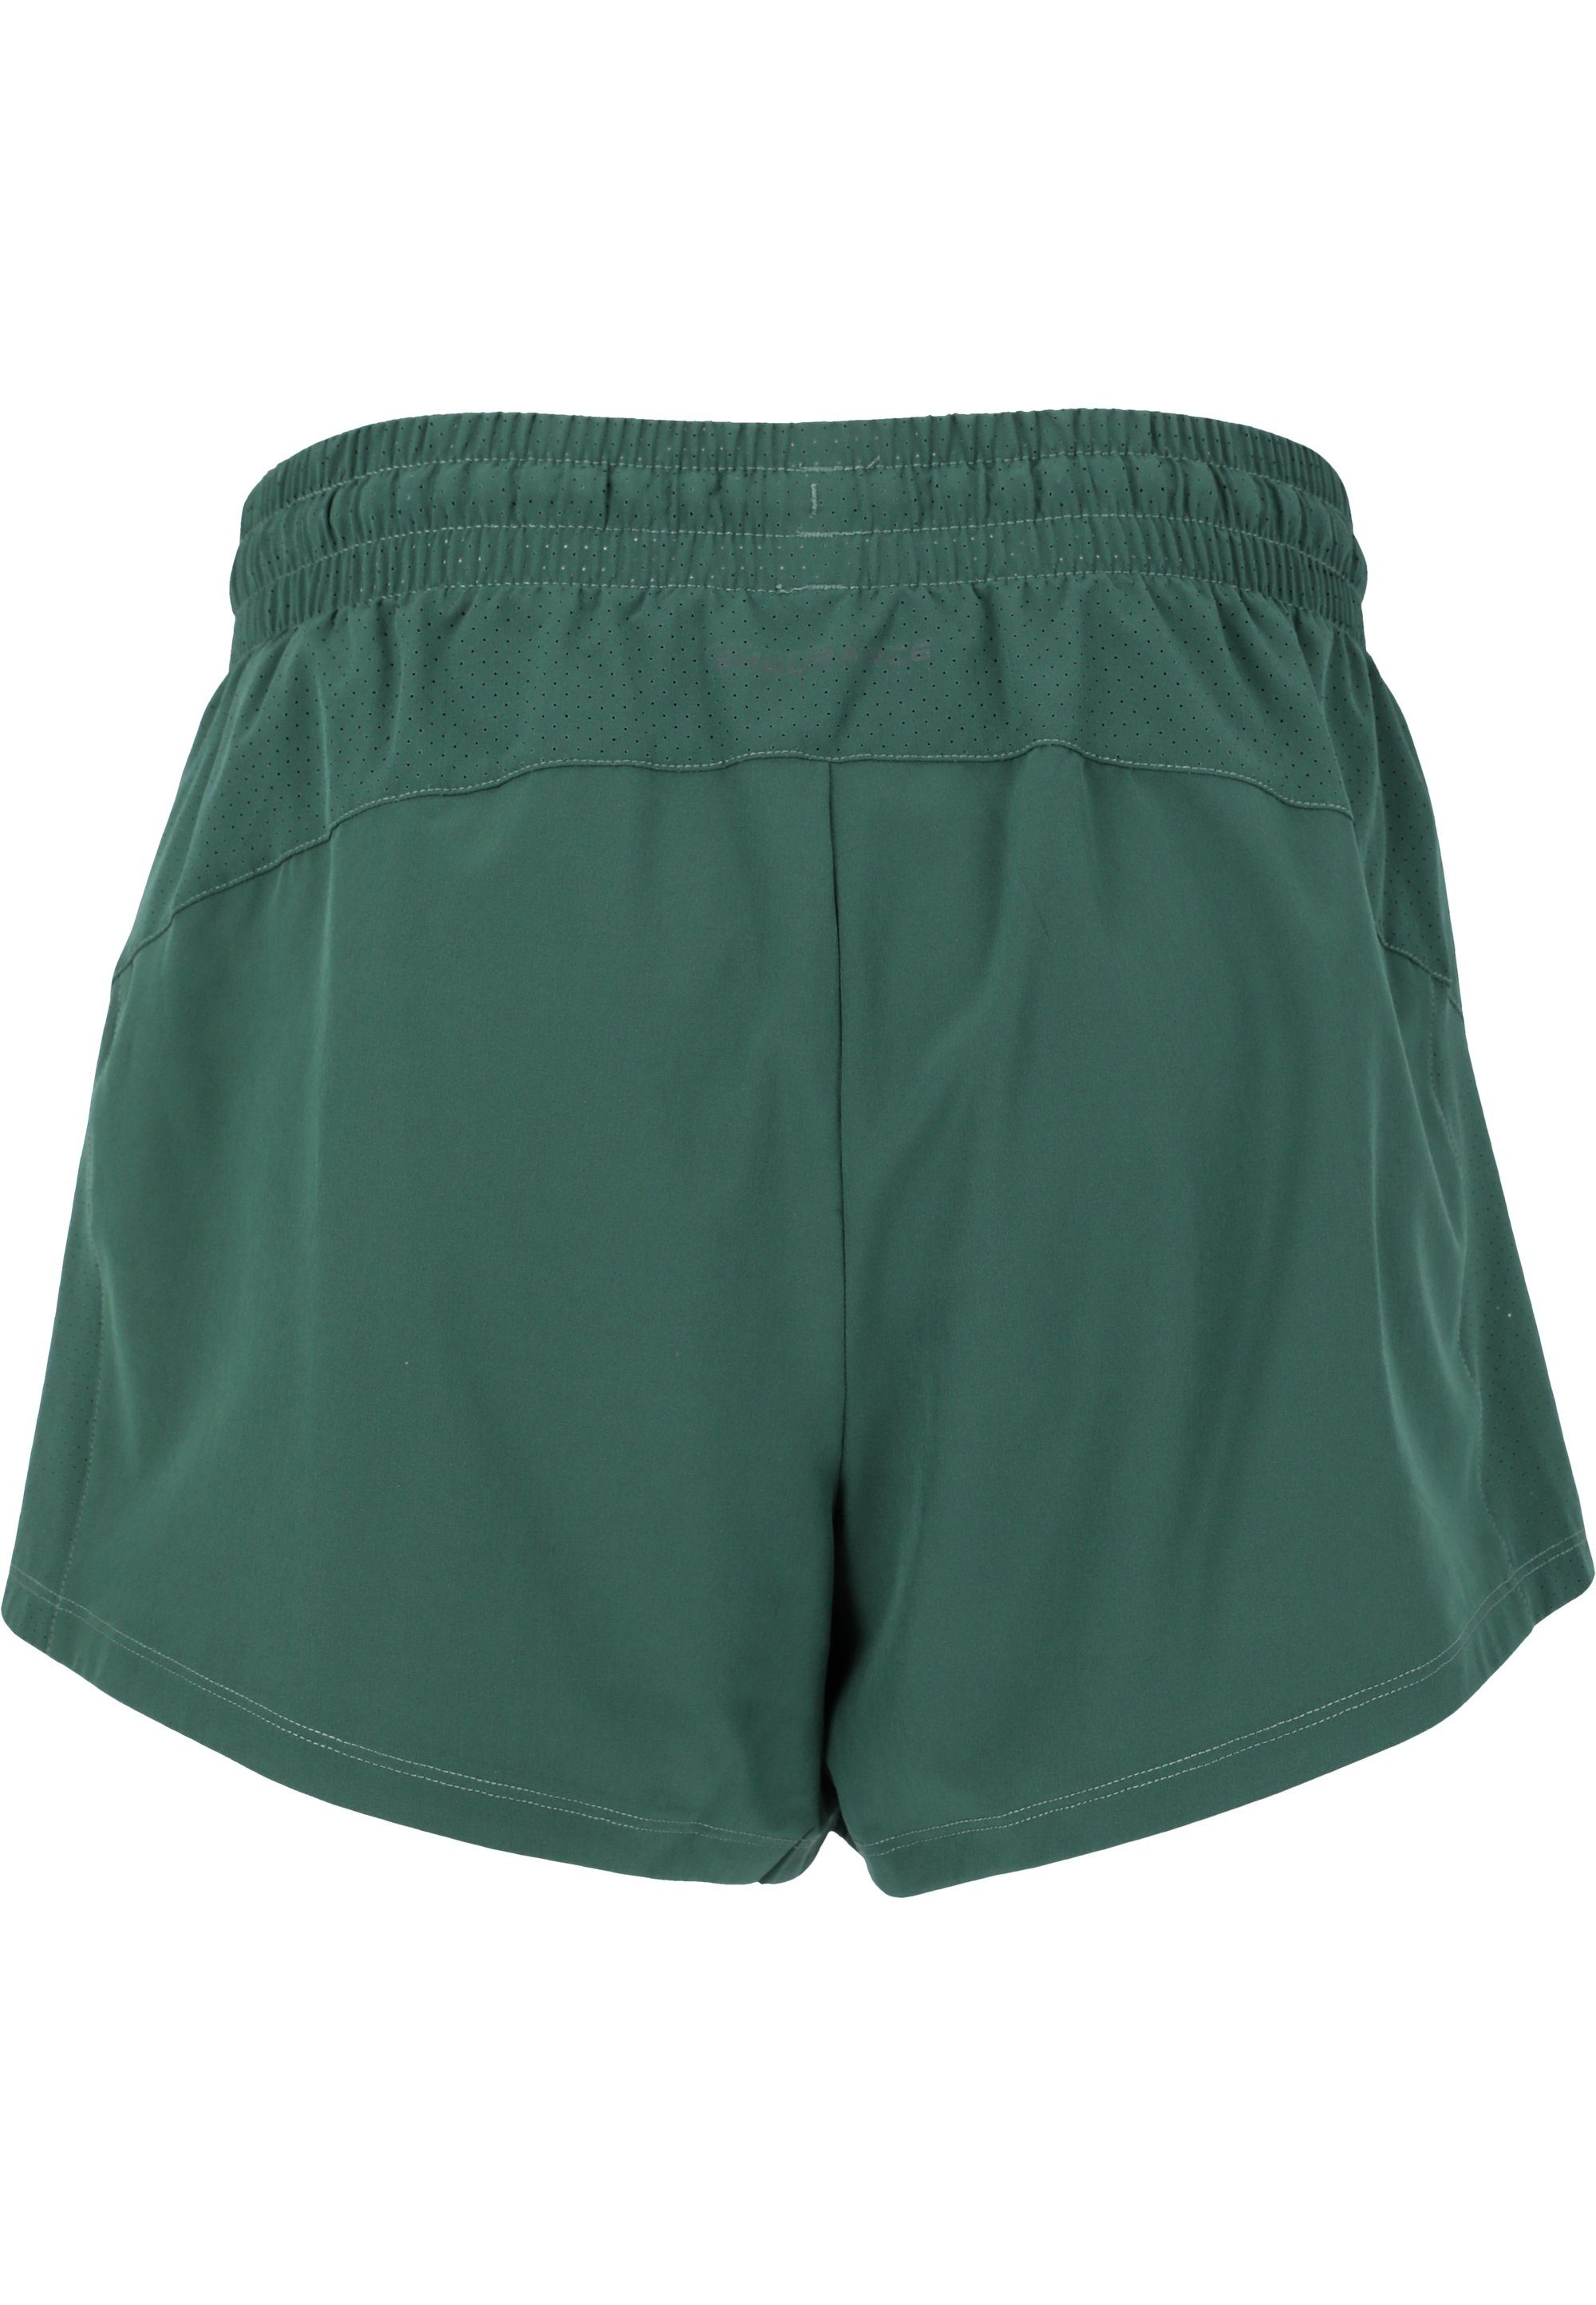 ENDURANCE Shorts Eslaire mit grün Taschen praktischen